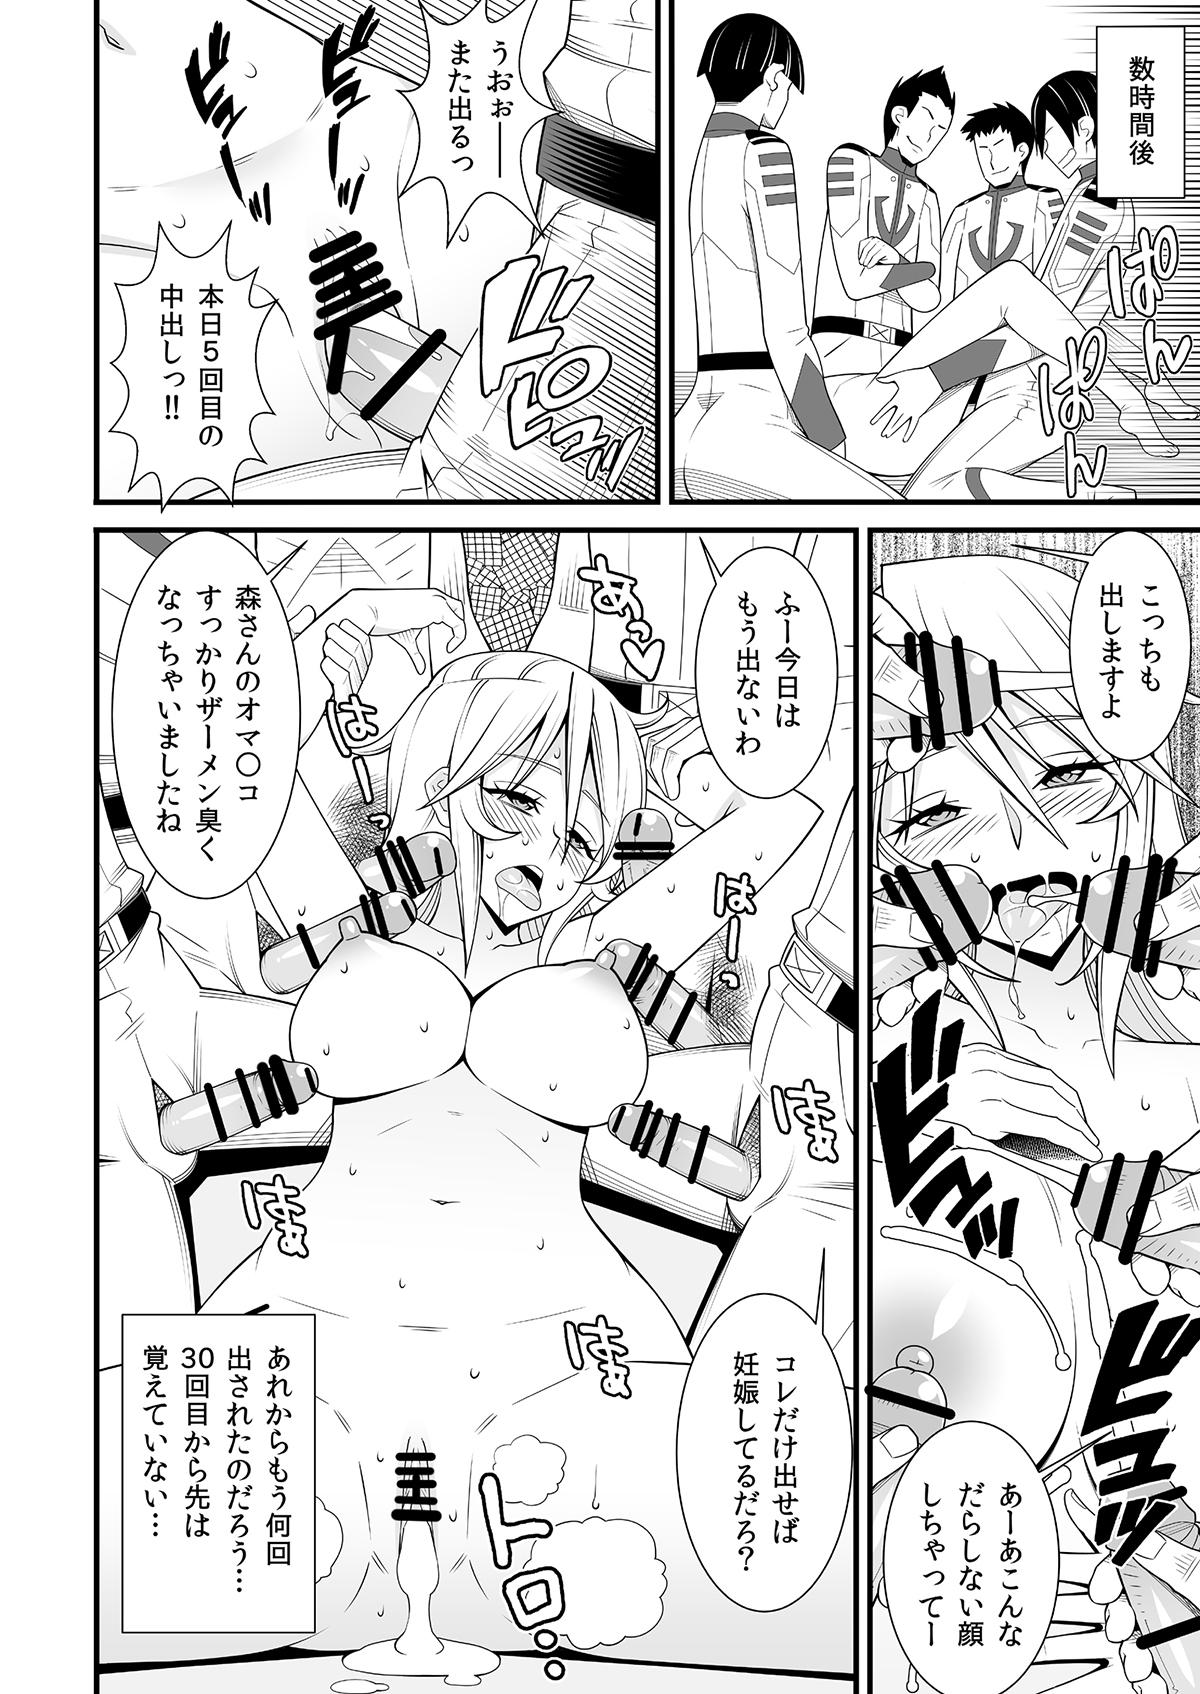 Chacal Yamato Nadesiko - Space battleship yamato Arabic - Page 12